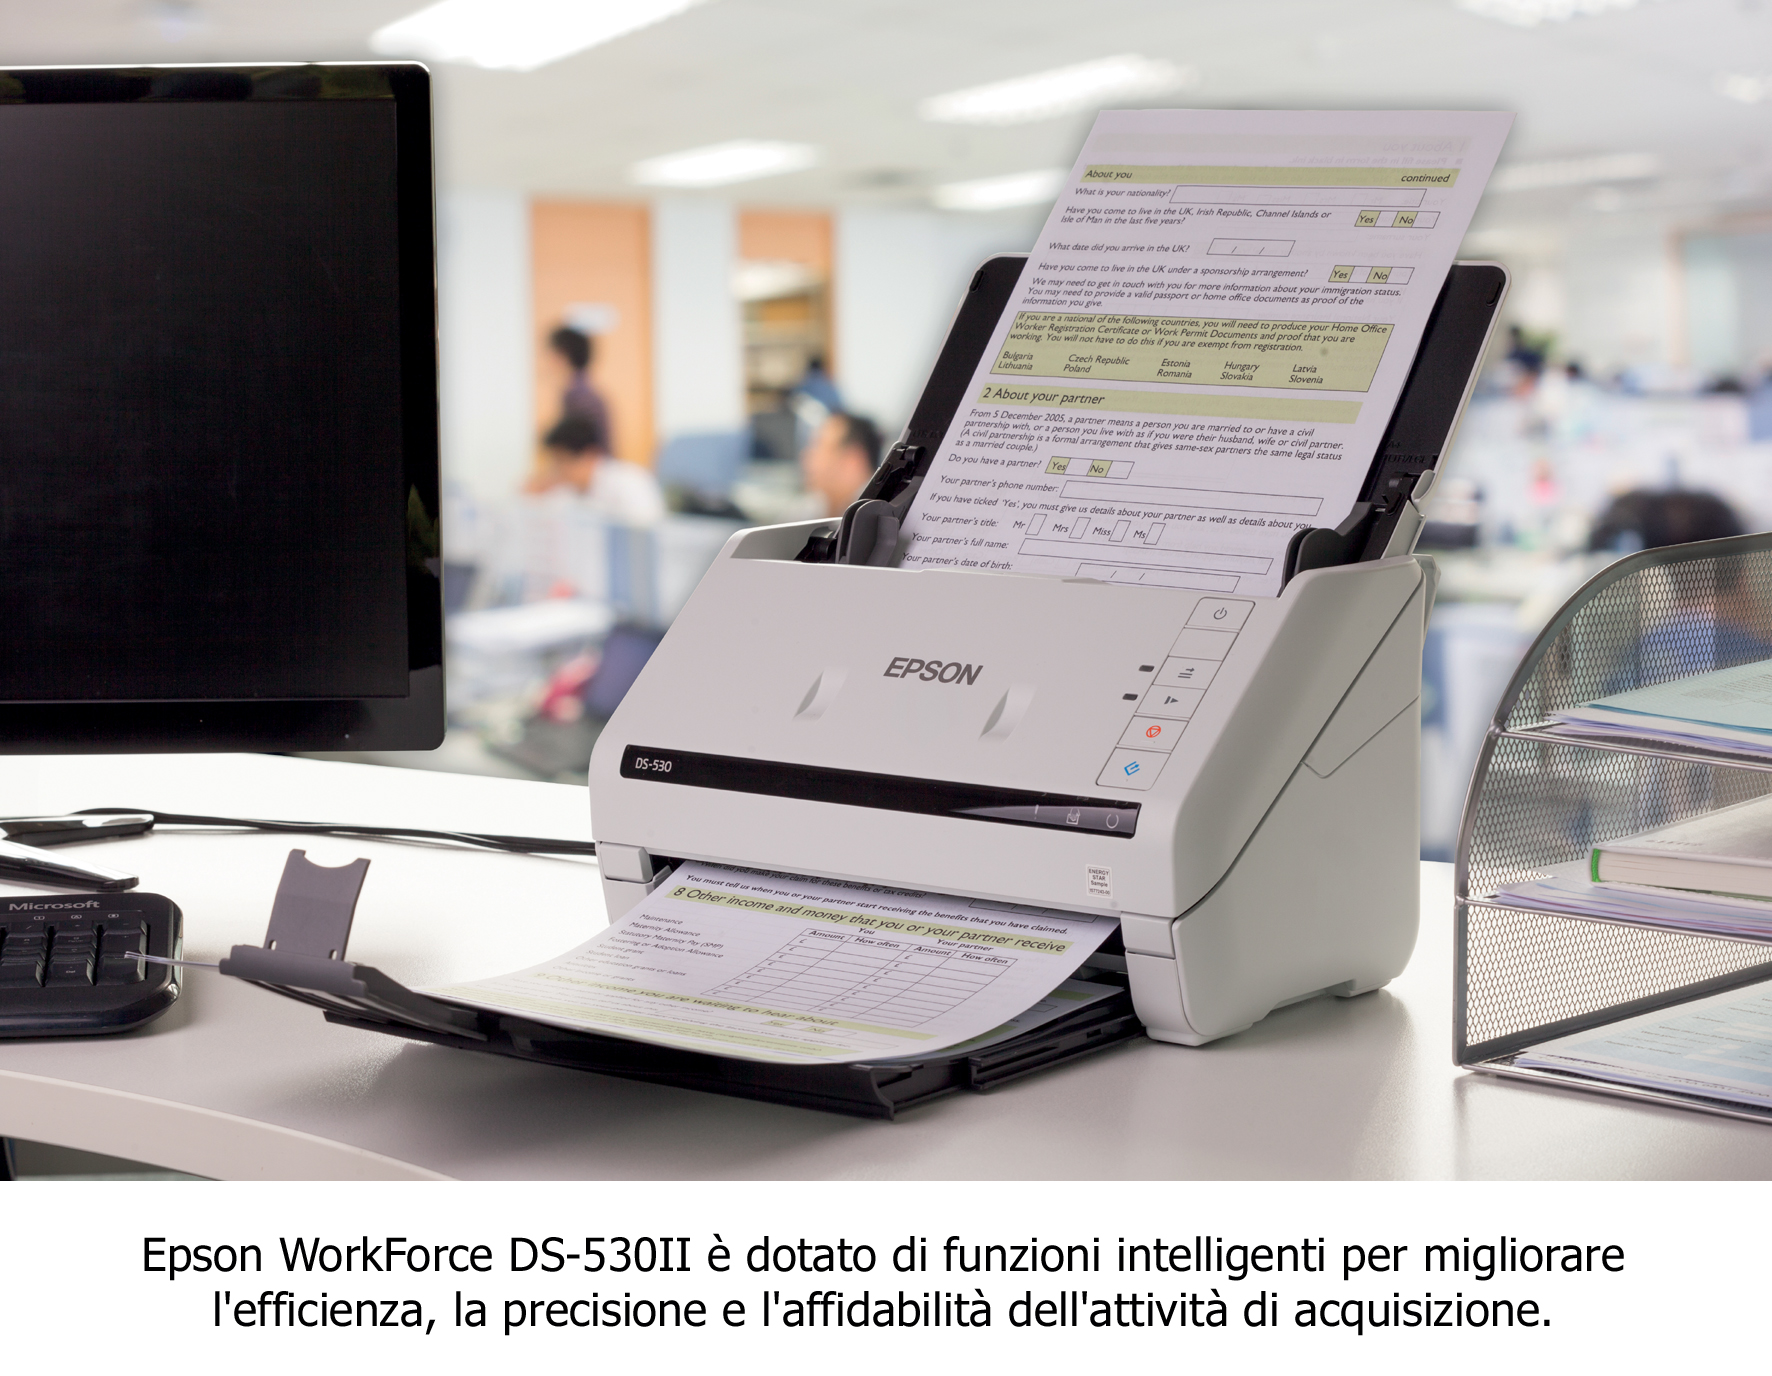 Epson presenta una serie di scanner per migliorare la sicurezza dei documenti e ridurre i costi